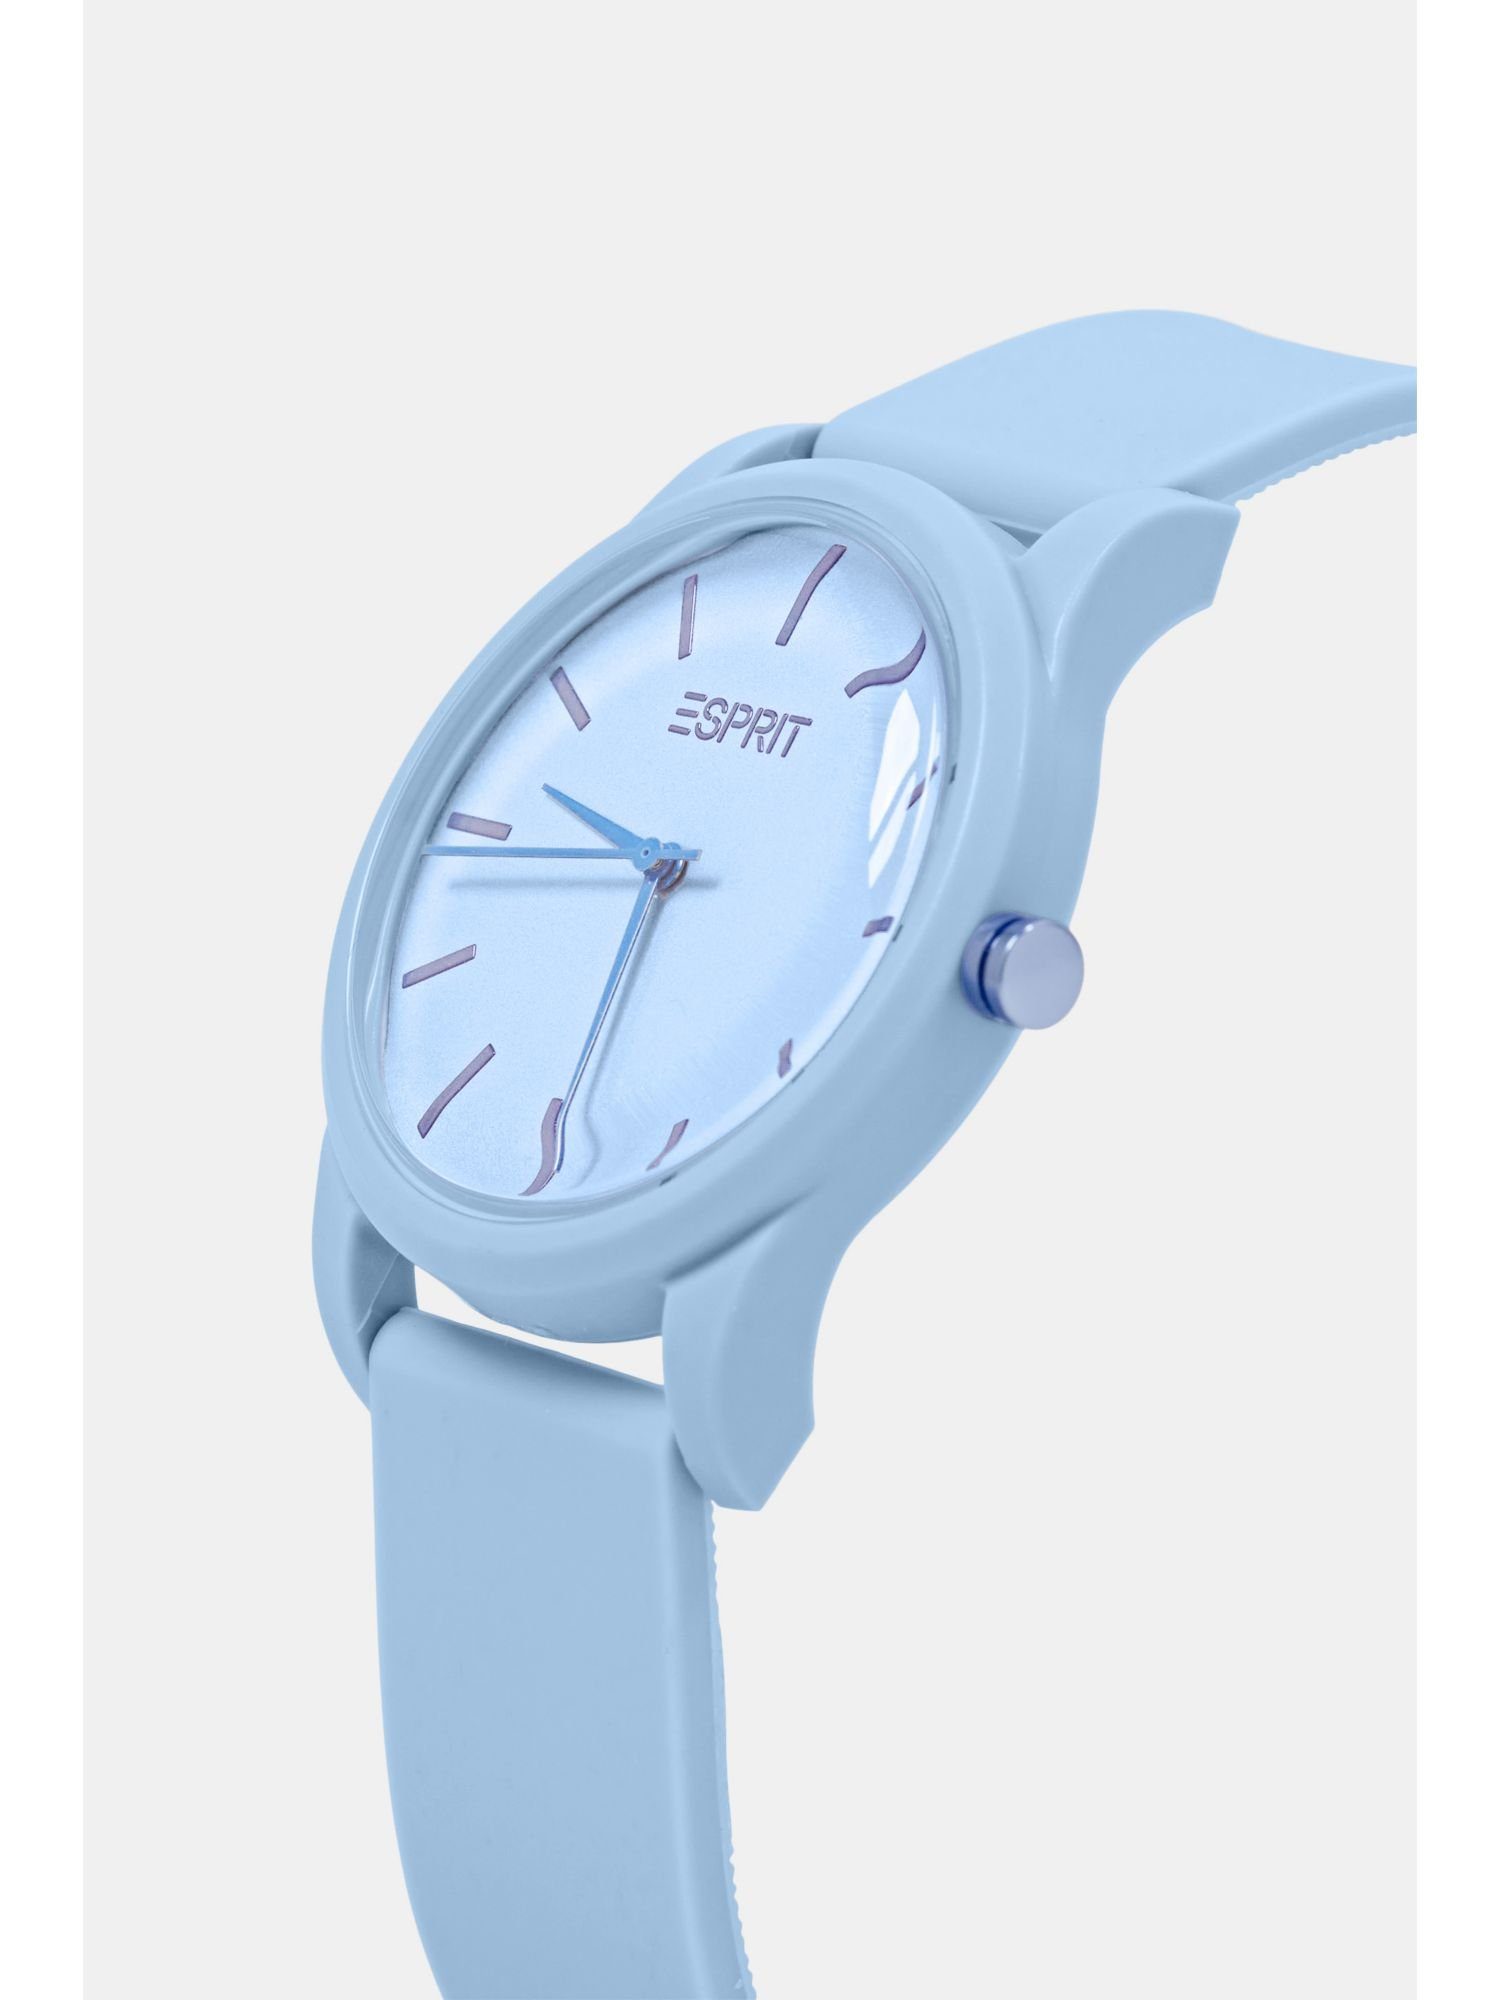 Esprit Chronograph Uhr hellblau Gummiarmband mit